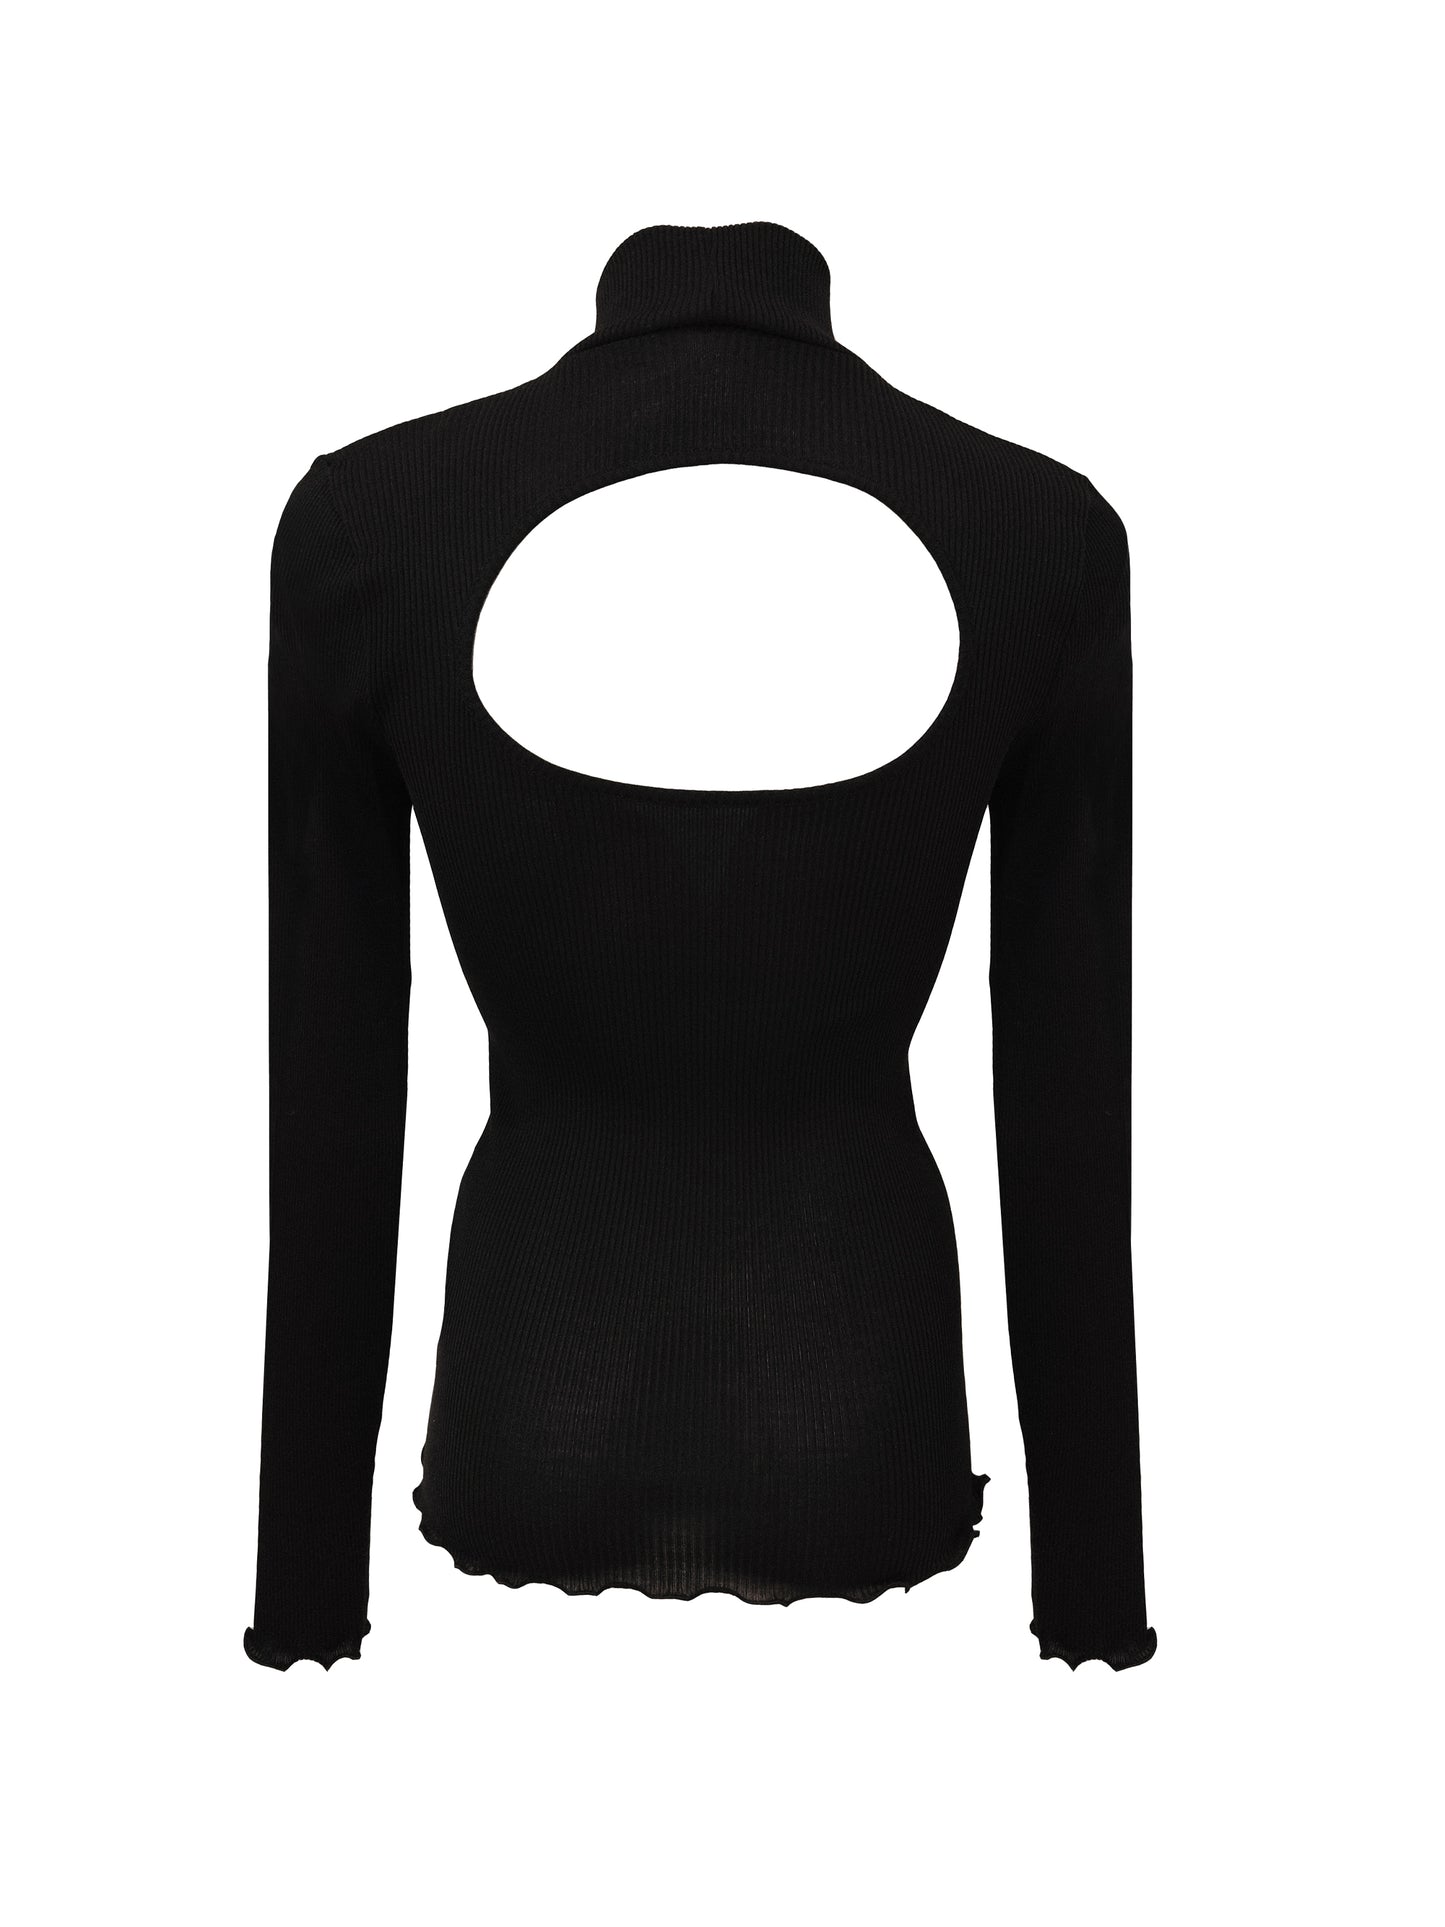 Schwarzes Top, mittelhoher Halsausschnitt, Rücken mit runder Form, Markenname Givenchy